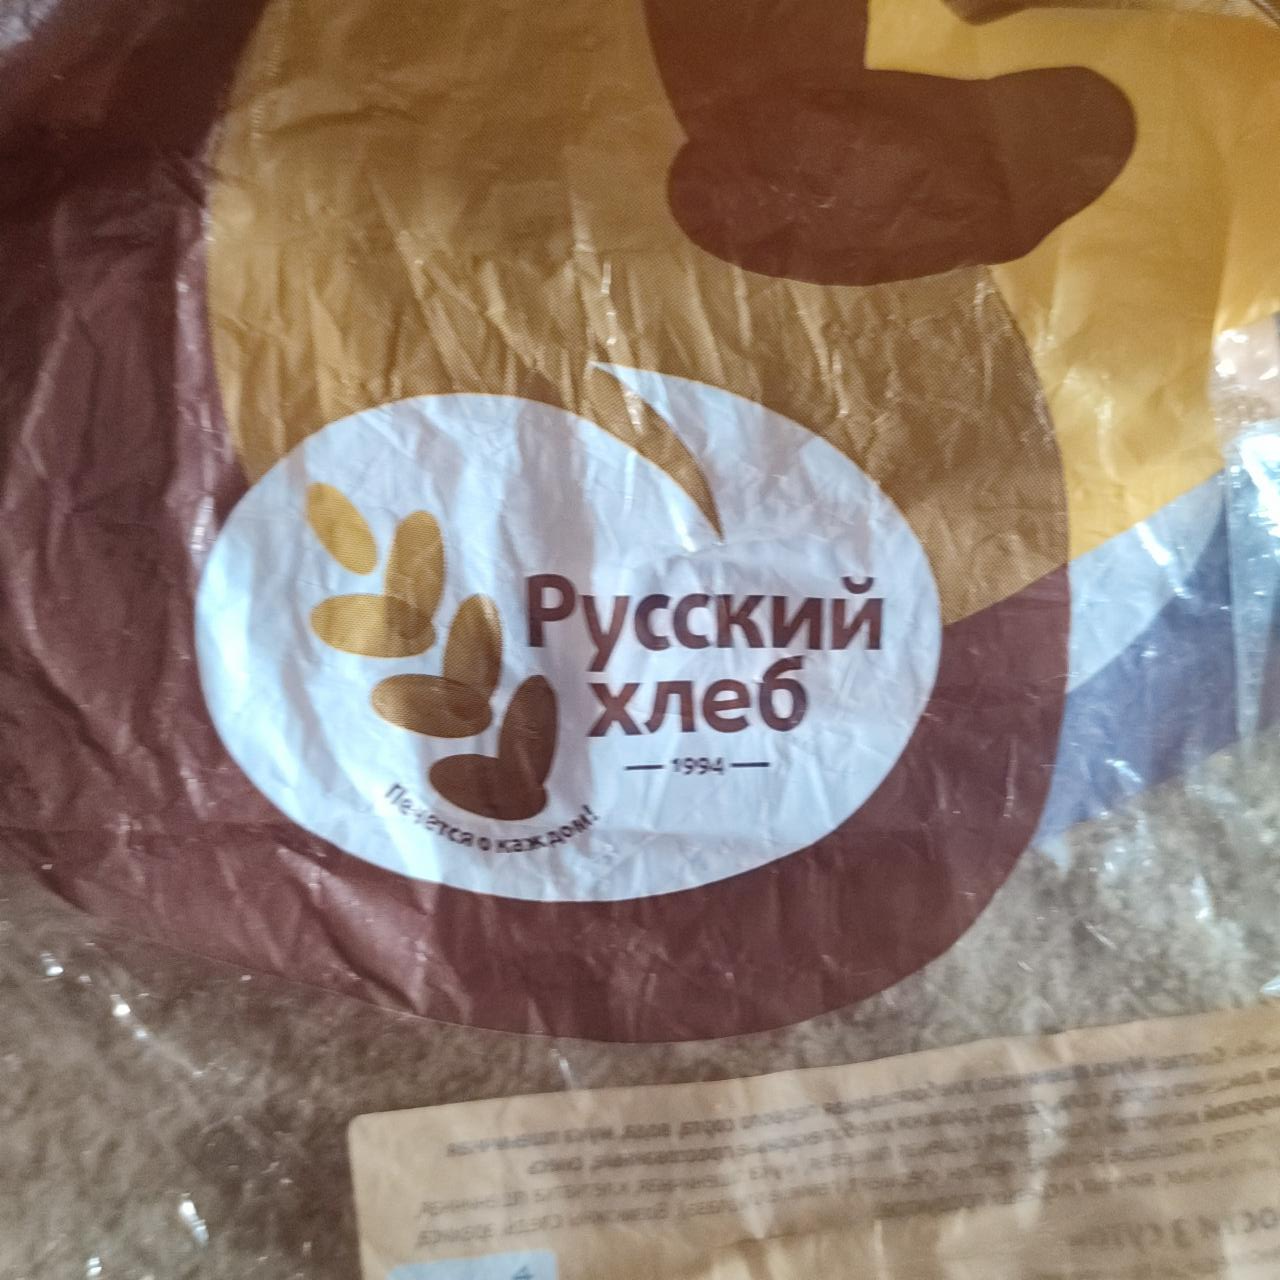 Фото - хлеб янтарный нарезанный в упаковке Русский хлеб